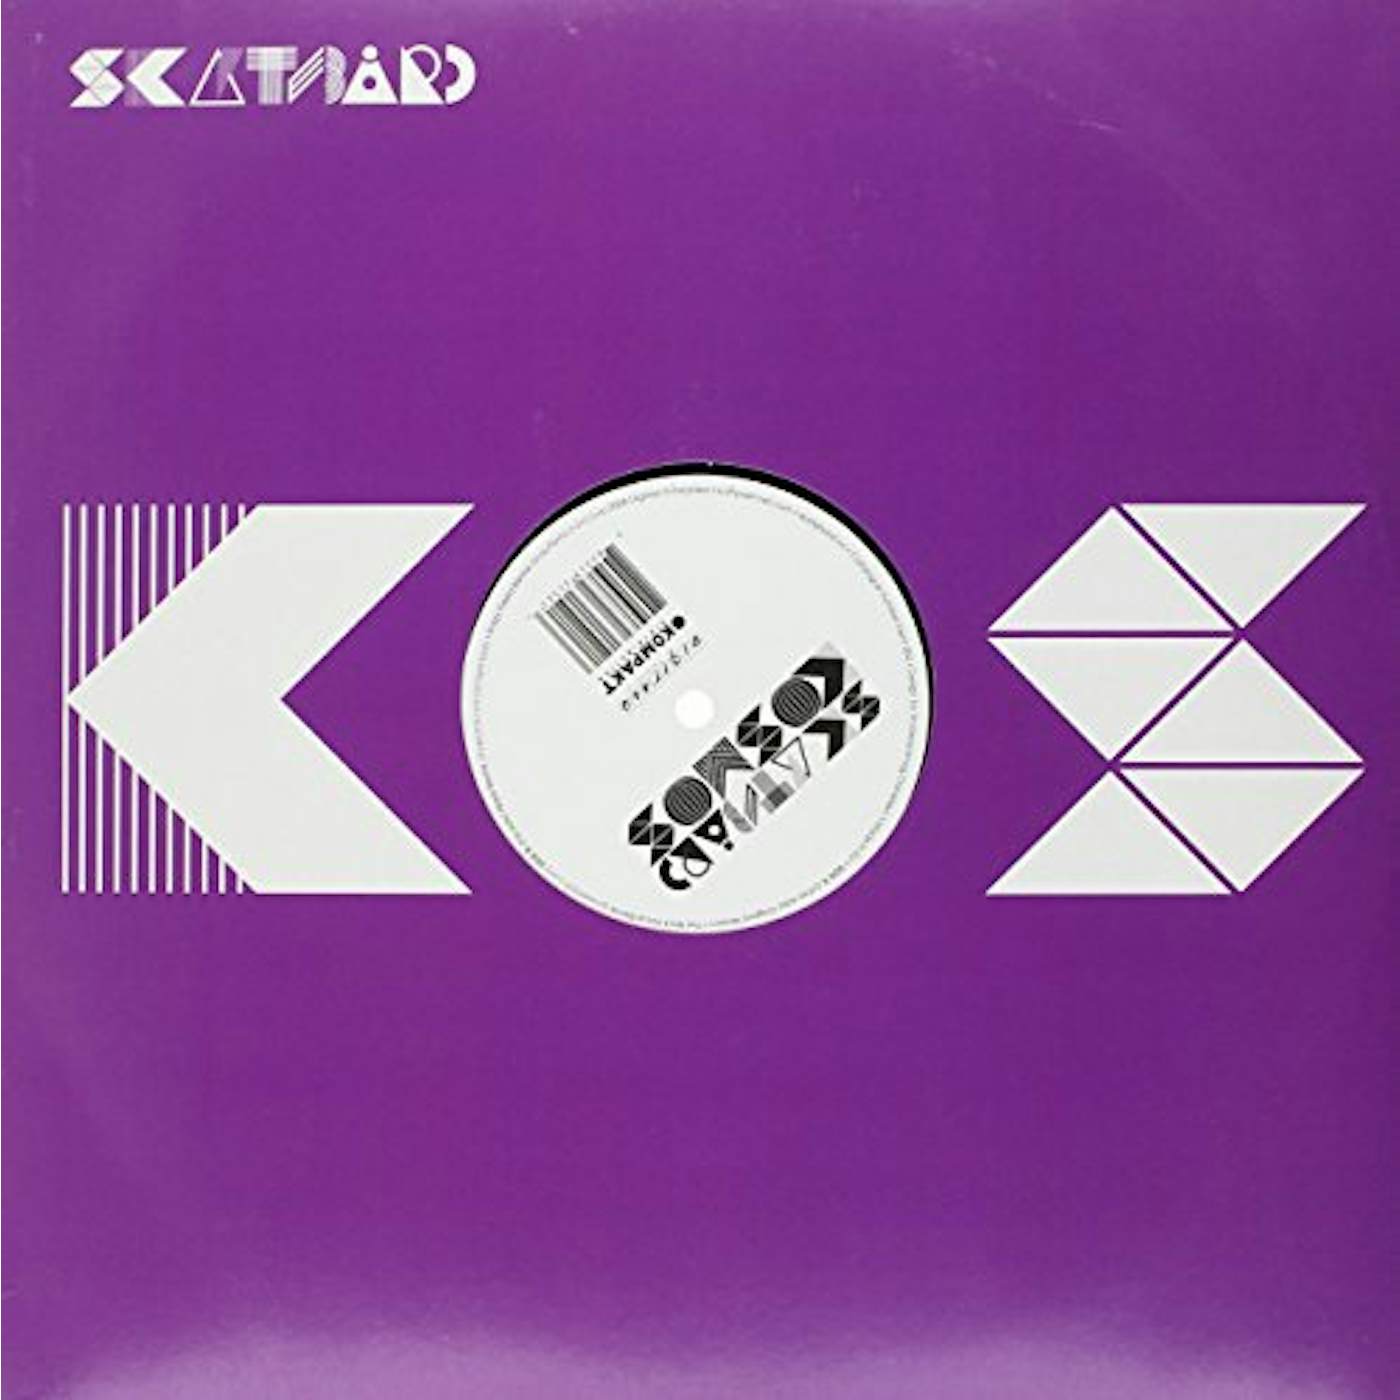 Skatebård Kosmos Vinyl Record